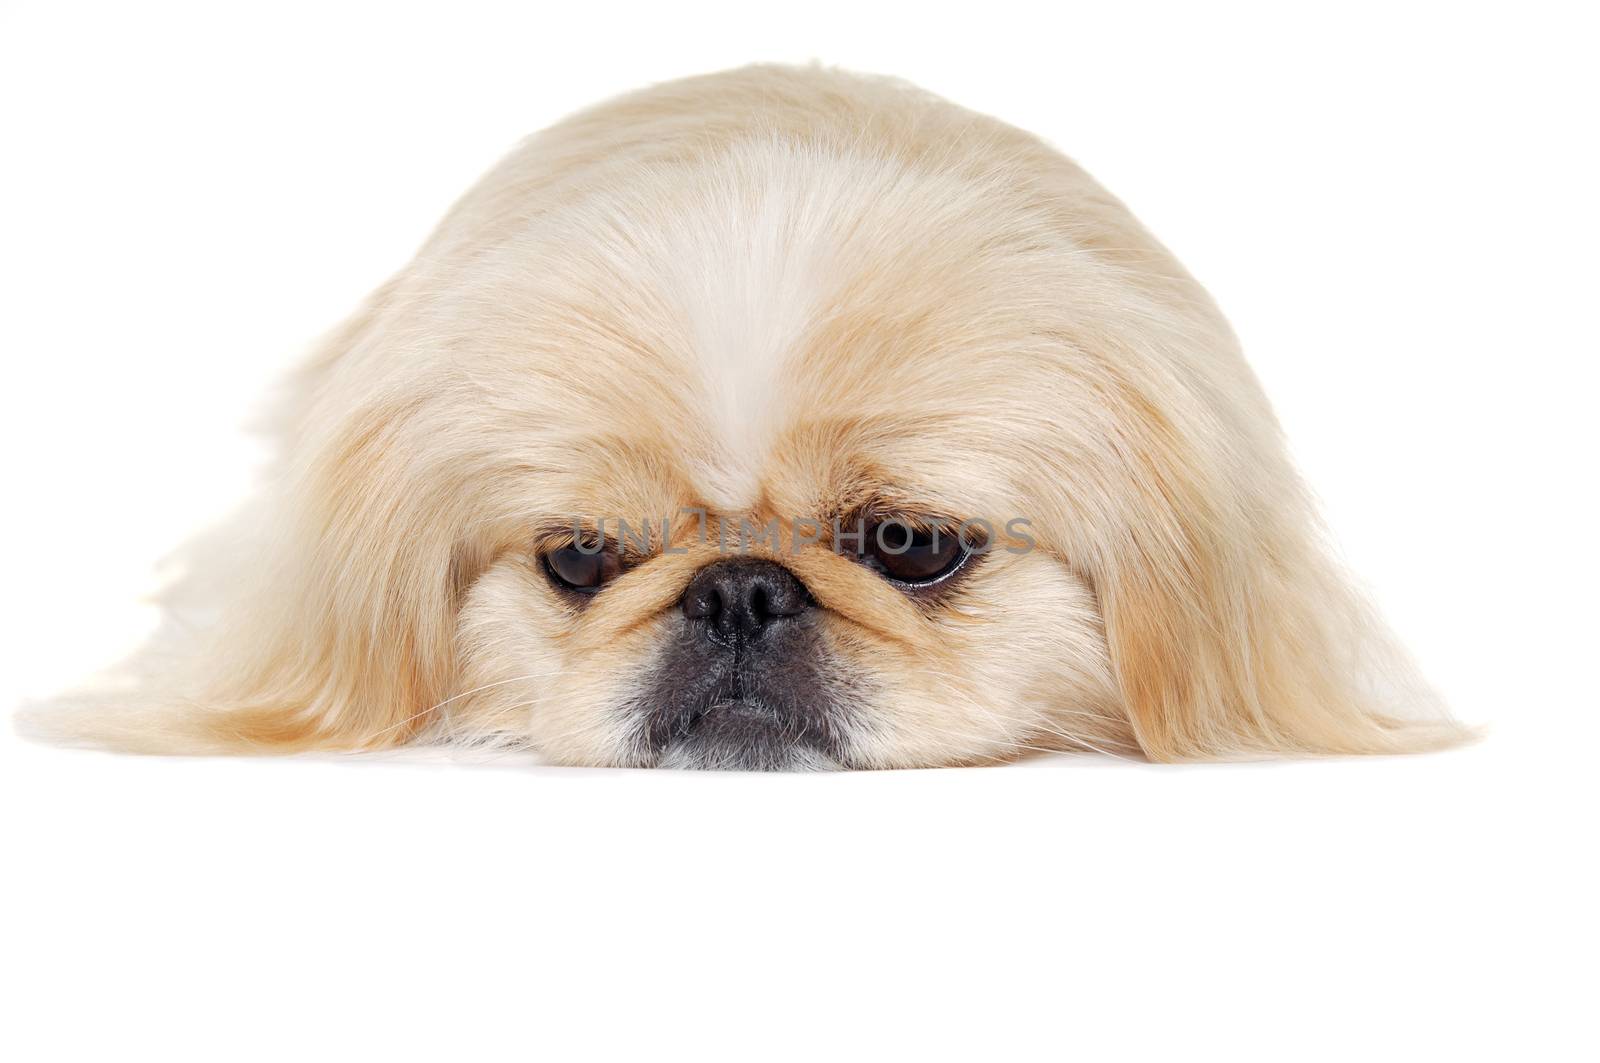 Face of a sad pekingese dog isolated on a white background